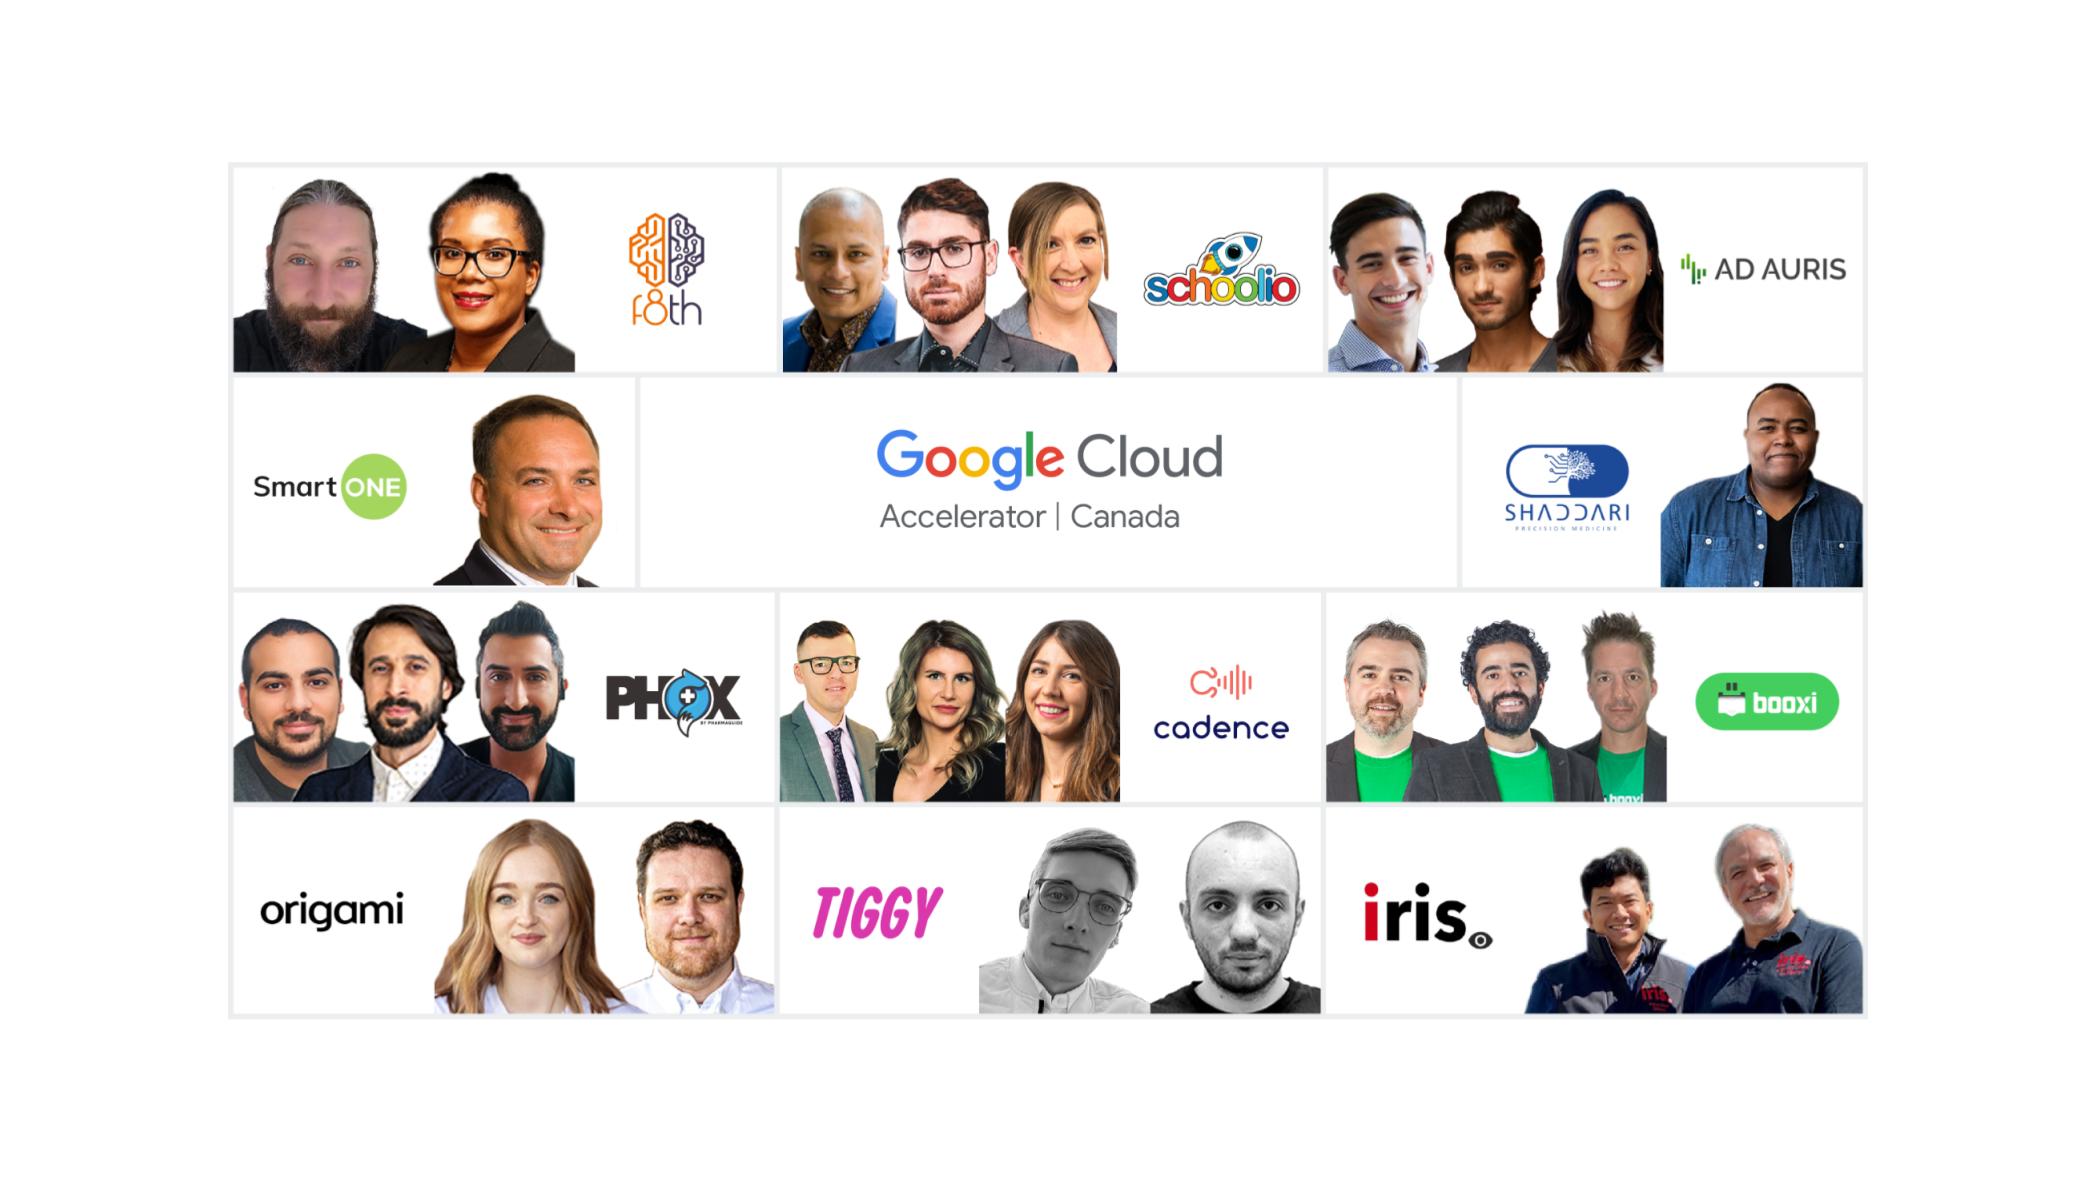 Startups Google Cloud 2022 và hình đại diện Avatar ML Meme:
Hãy cùng khám phá những bức hình đại diện Avatar ML Meme đặc sắc của các startups trên Google Cloud 2022! Vịt, ong hoàng gia, nhân vật hoạt hình... Tất cả đều được kết hợp tài tình trong những biểu tượng thú vị cùng sự trí tuệ nhân tạo đầy tiềm năng.